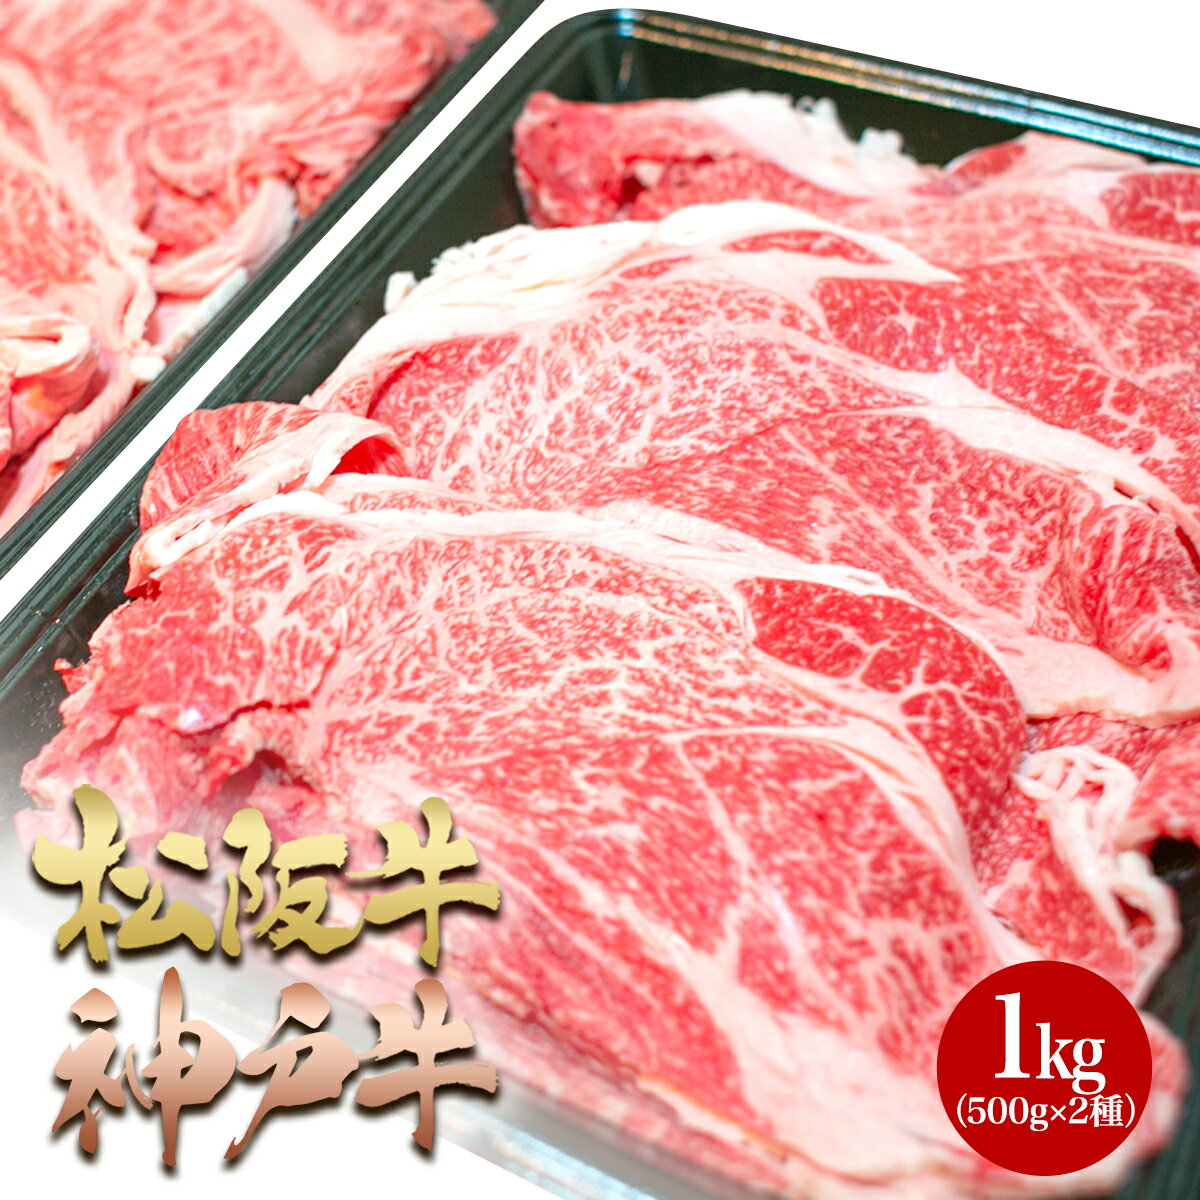 松阪牛 神戸牛 食べ比べ 牛肉 メガ盛り 1kg (500g